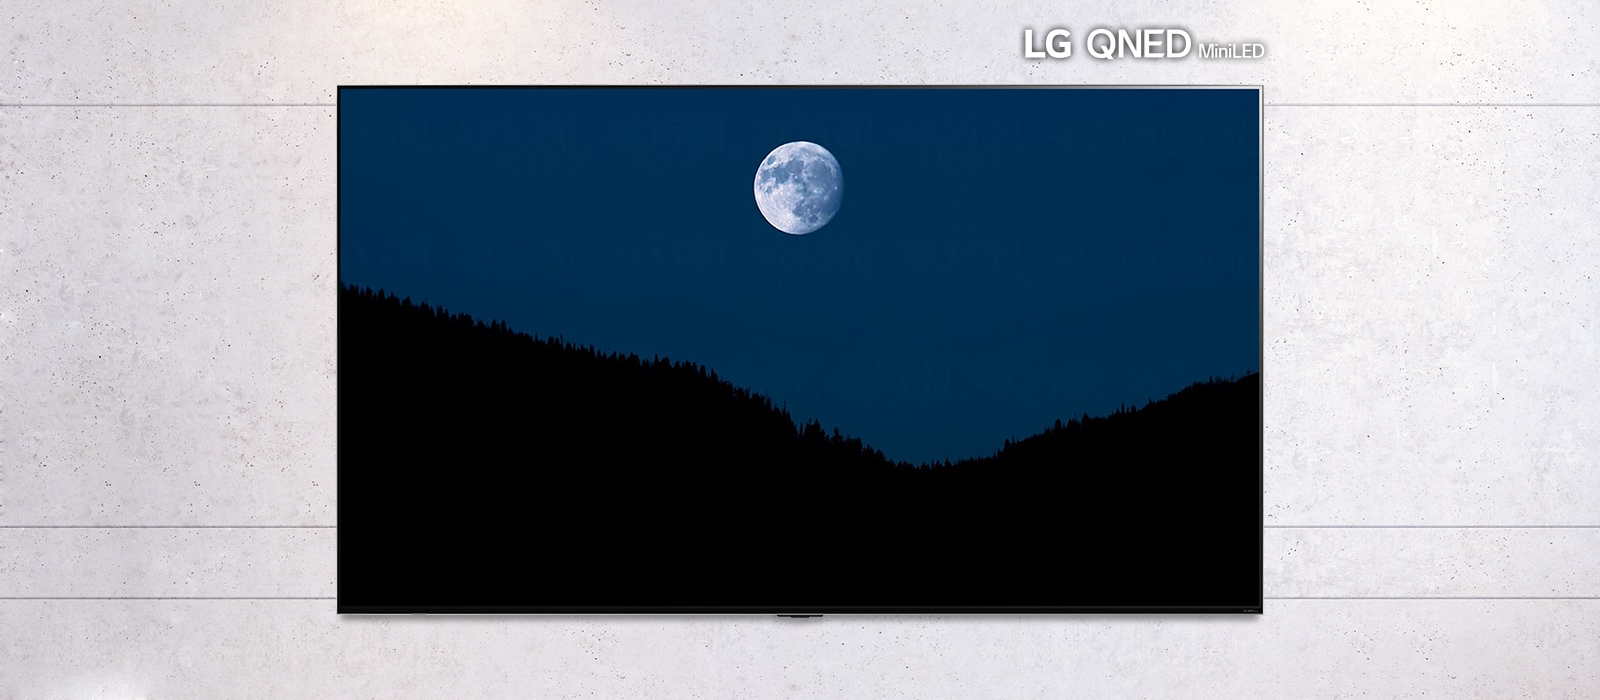 Pomična slika televizora montiranog na zid na kojem se prikazuje mračan prizor mjeseca iznad planina. Prizor se izmjenjuje na televizoru uobičajene veličine i televizoru LG QNED Mini LED s velikim zaslonom.